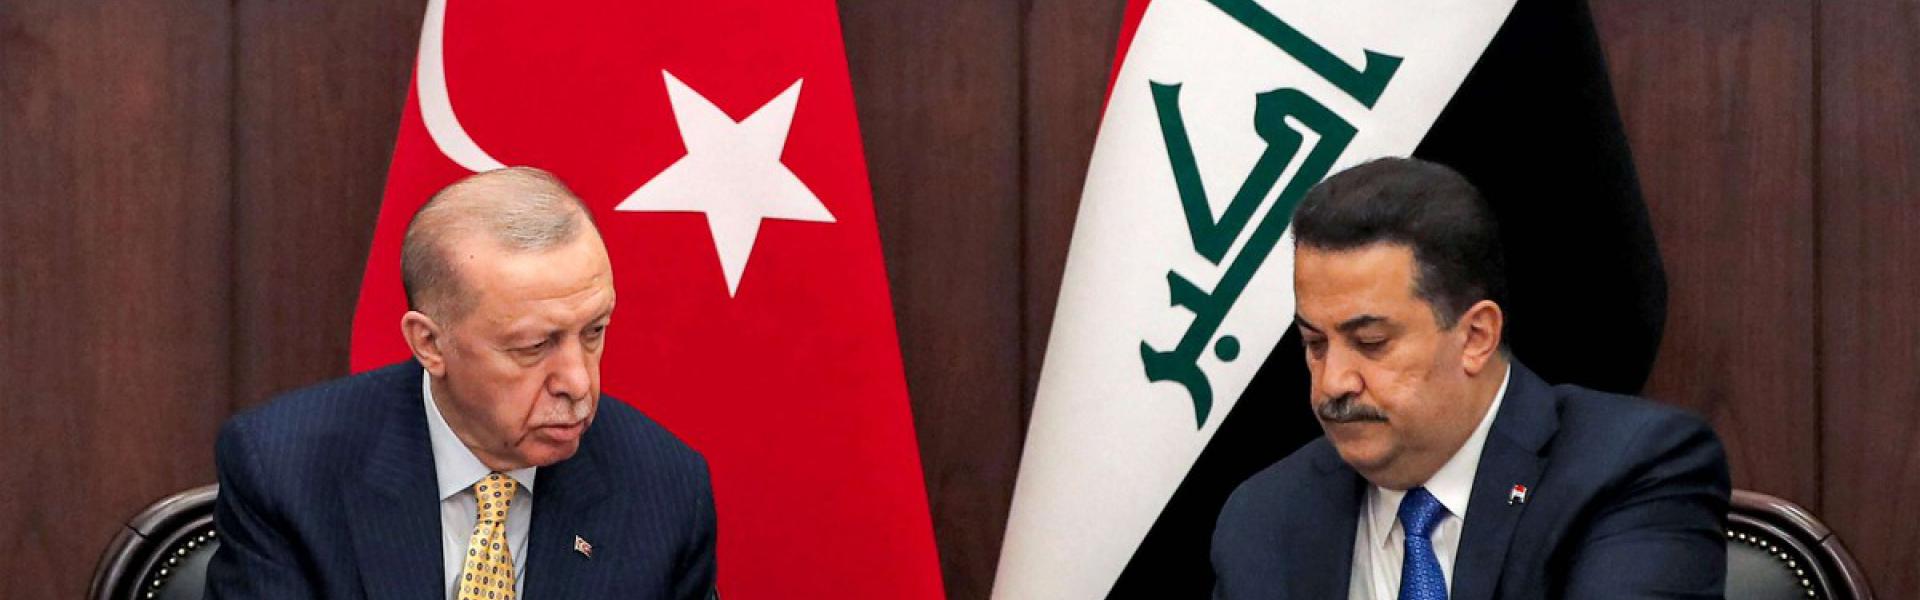 أردوغان يرفع المنافسة مع إيران على النفوذ في العراق 